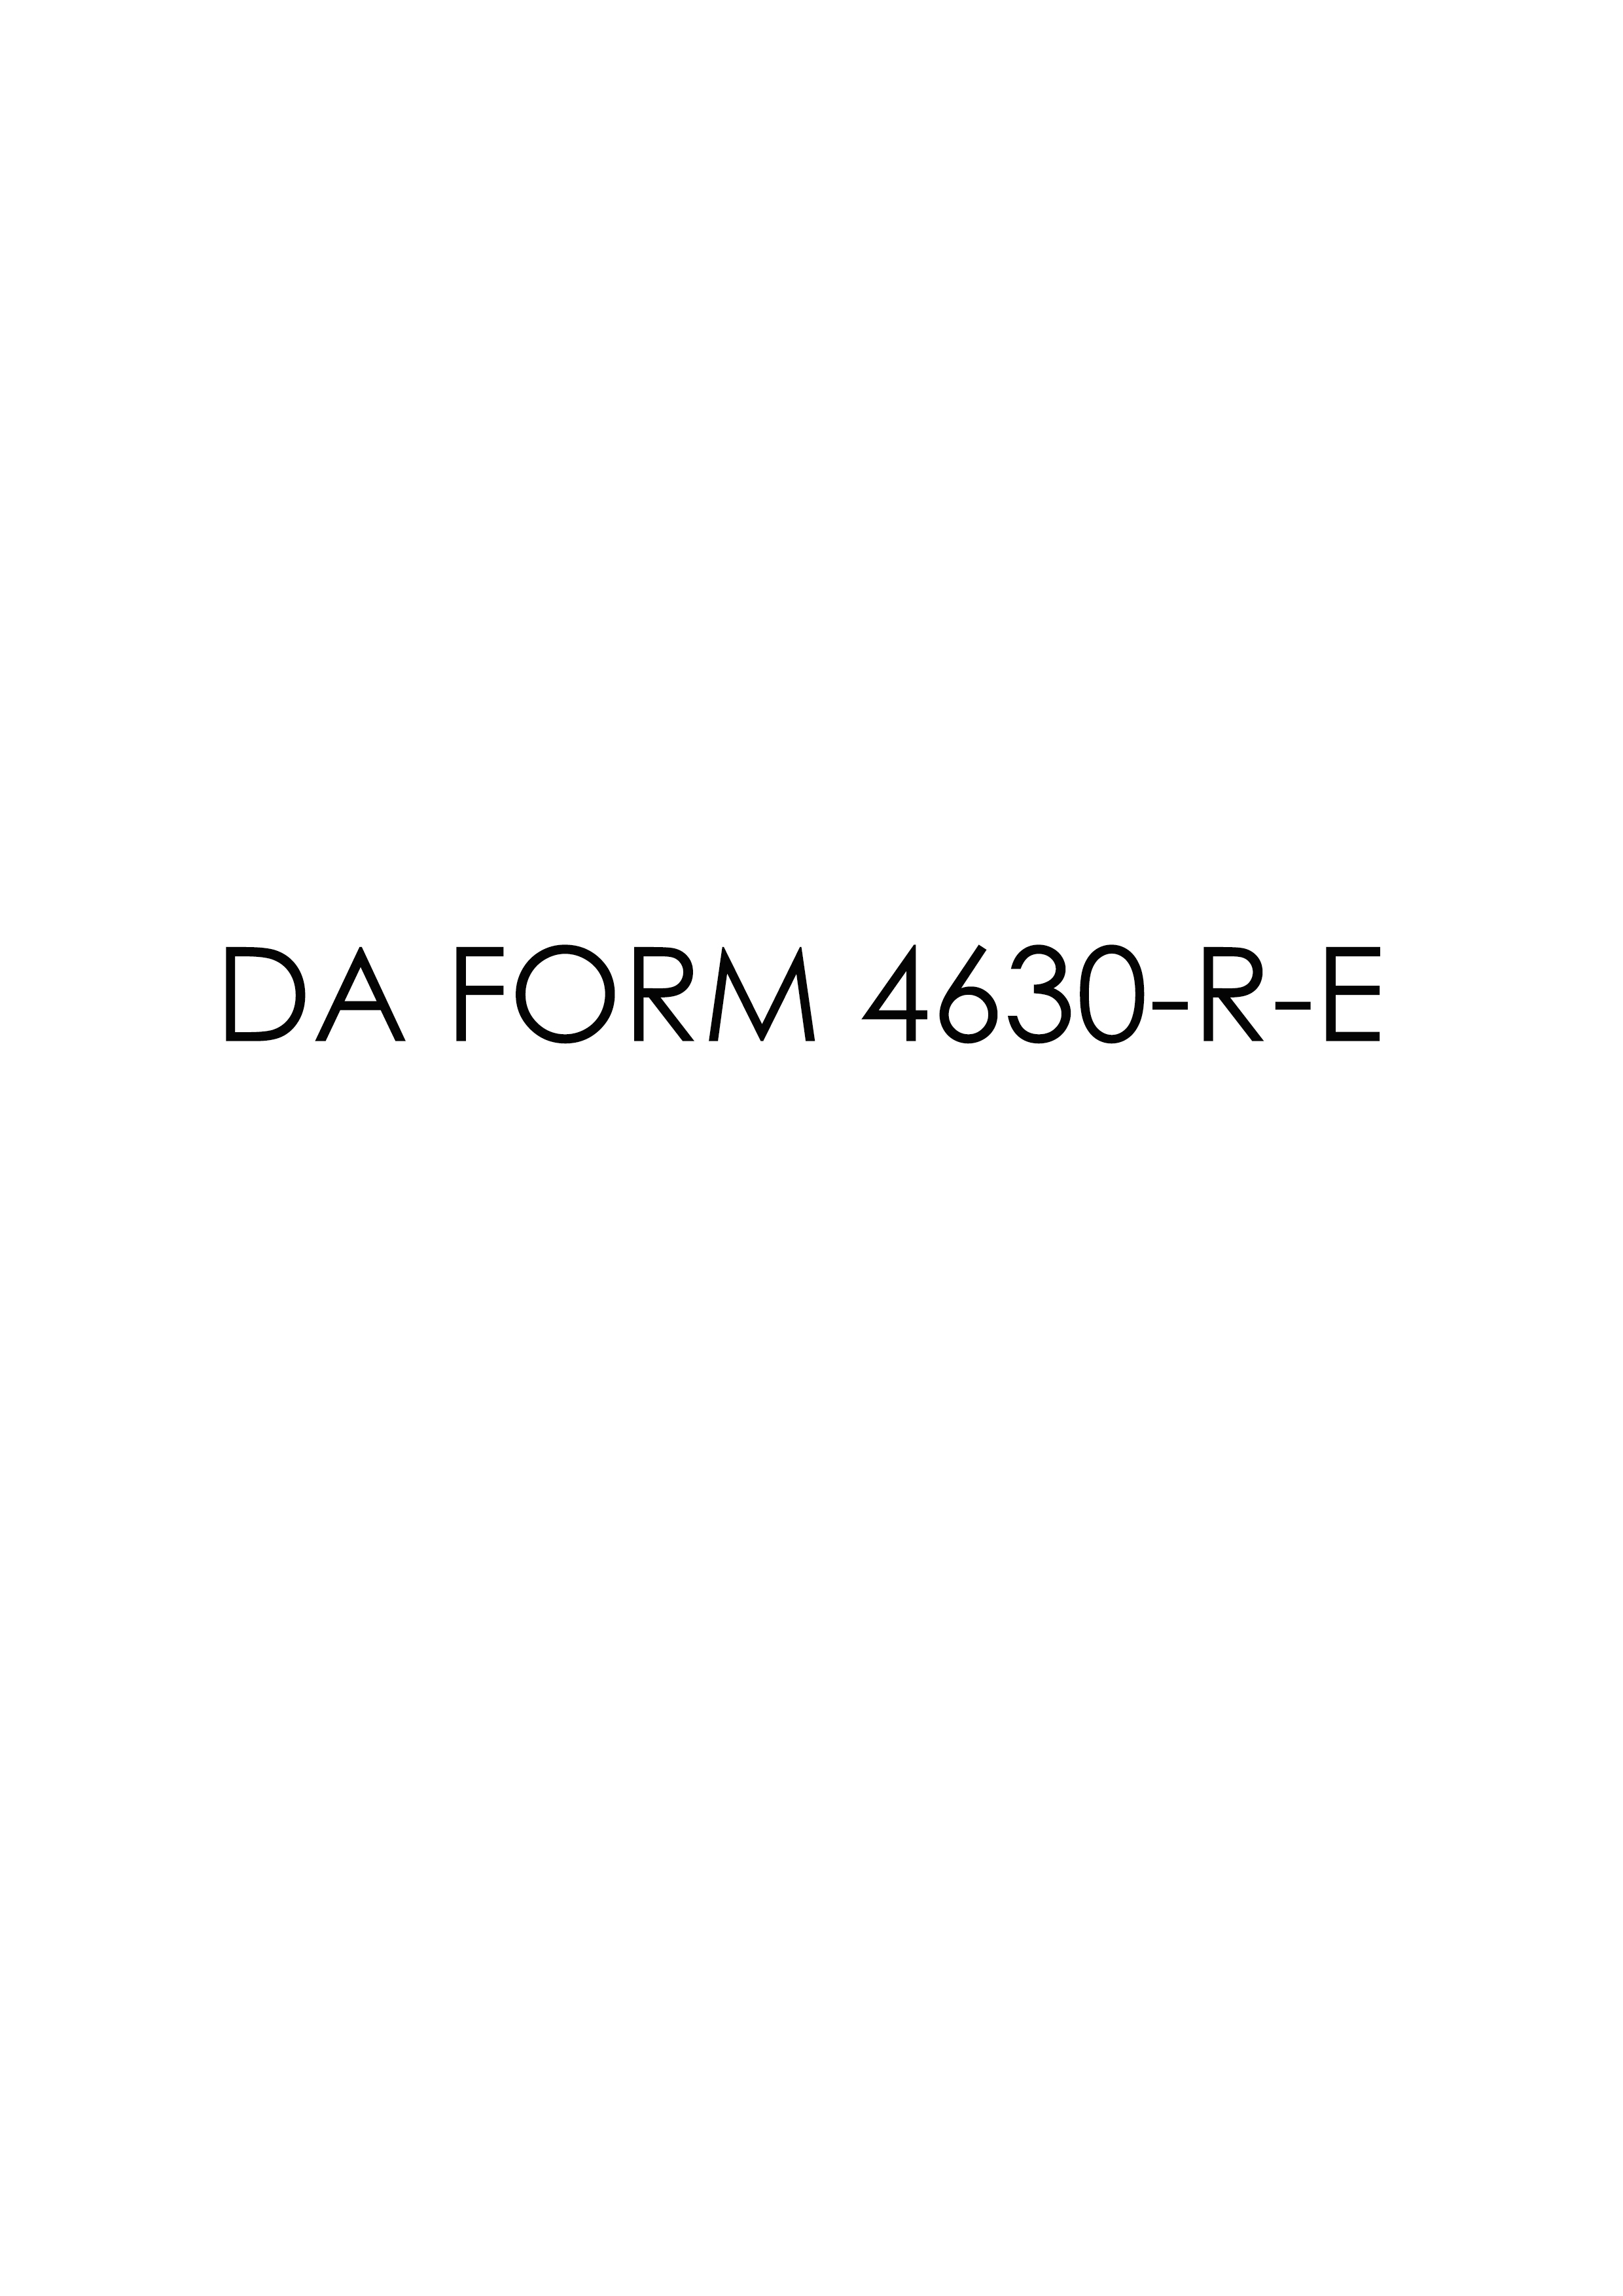 Download Fillable da Form 4630-R-E